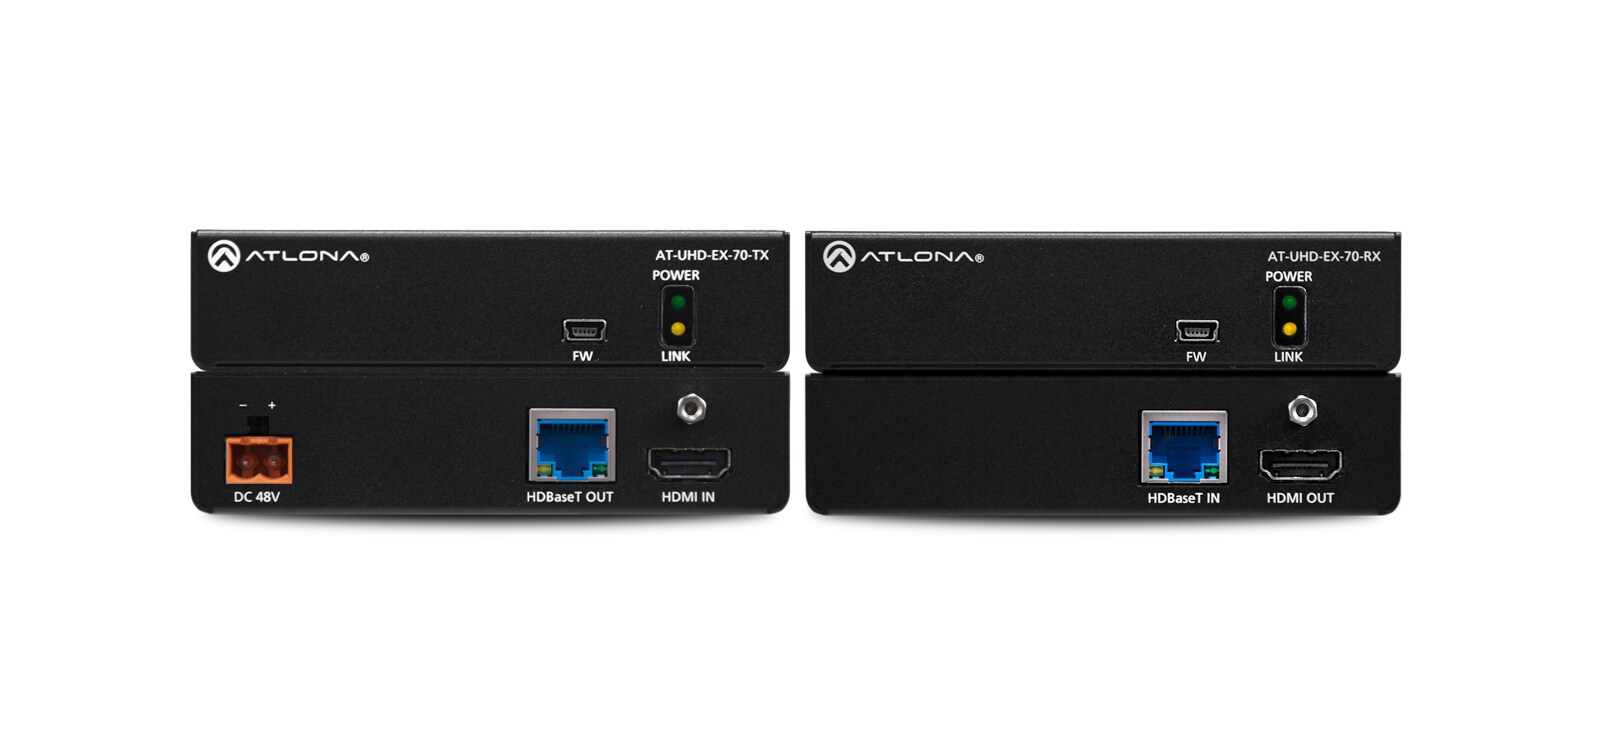 Atlona 4K UHD HDMI over HDBaseT Transmitter/Receiver Kit